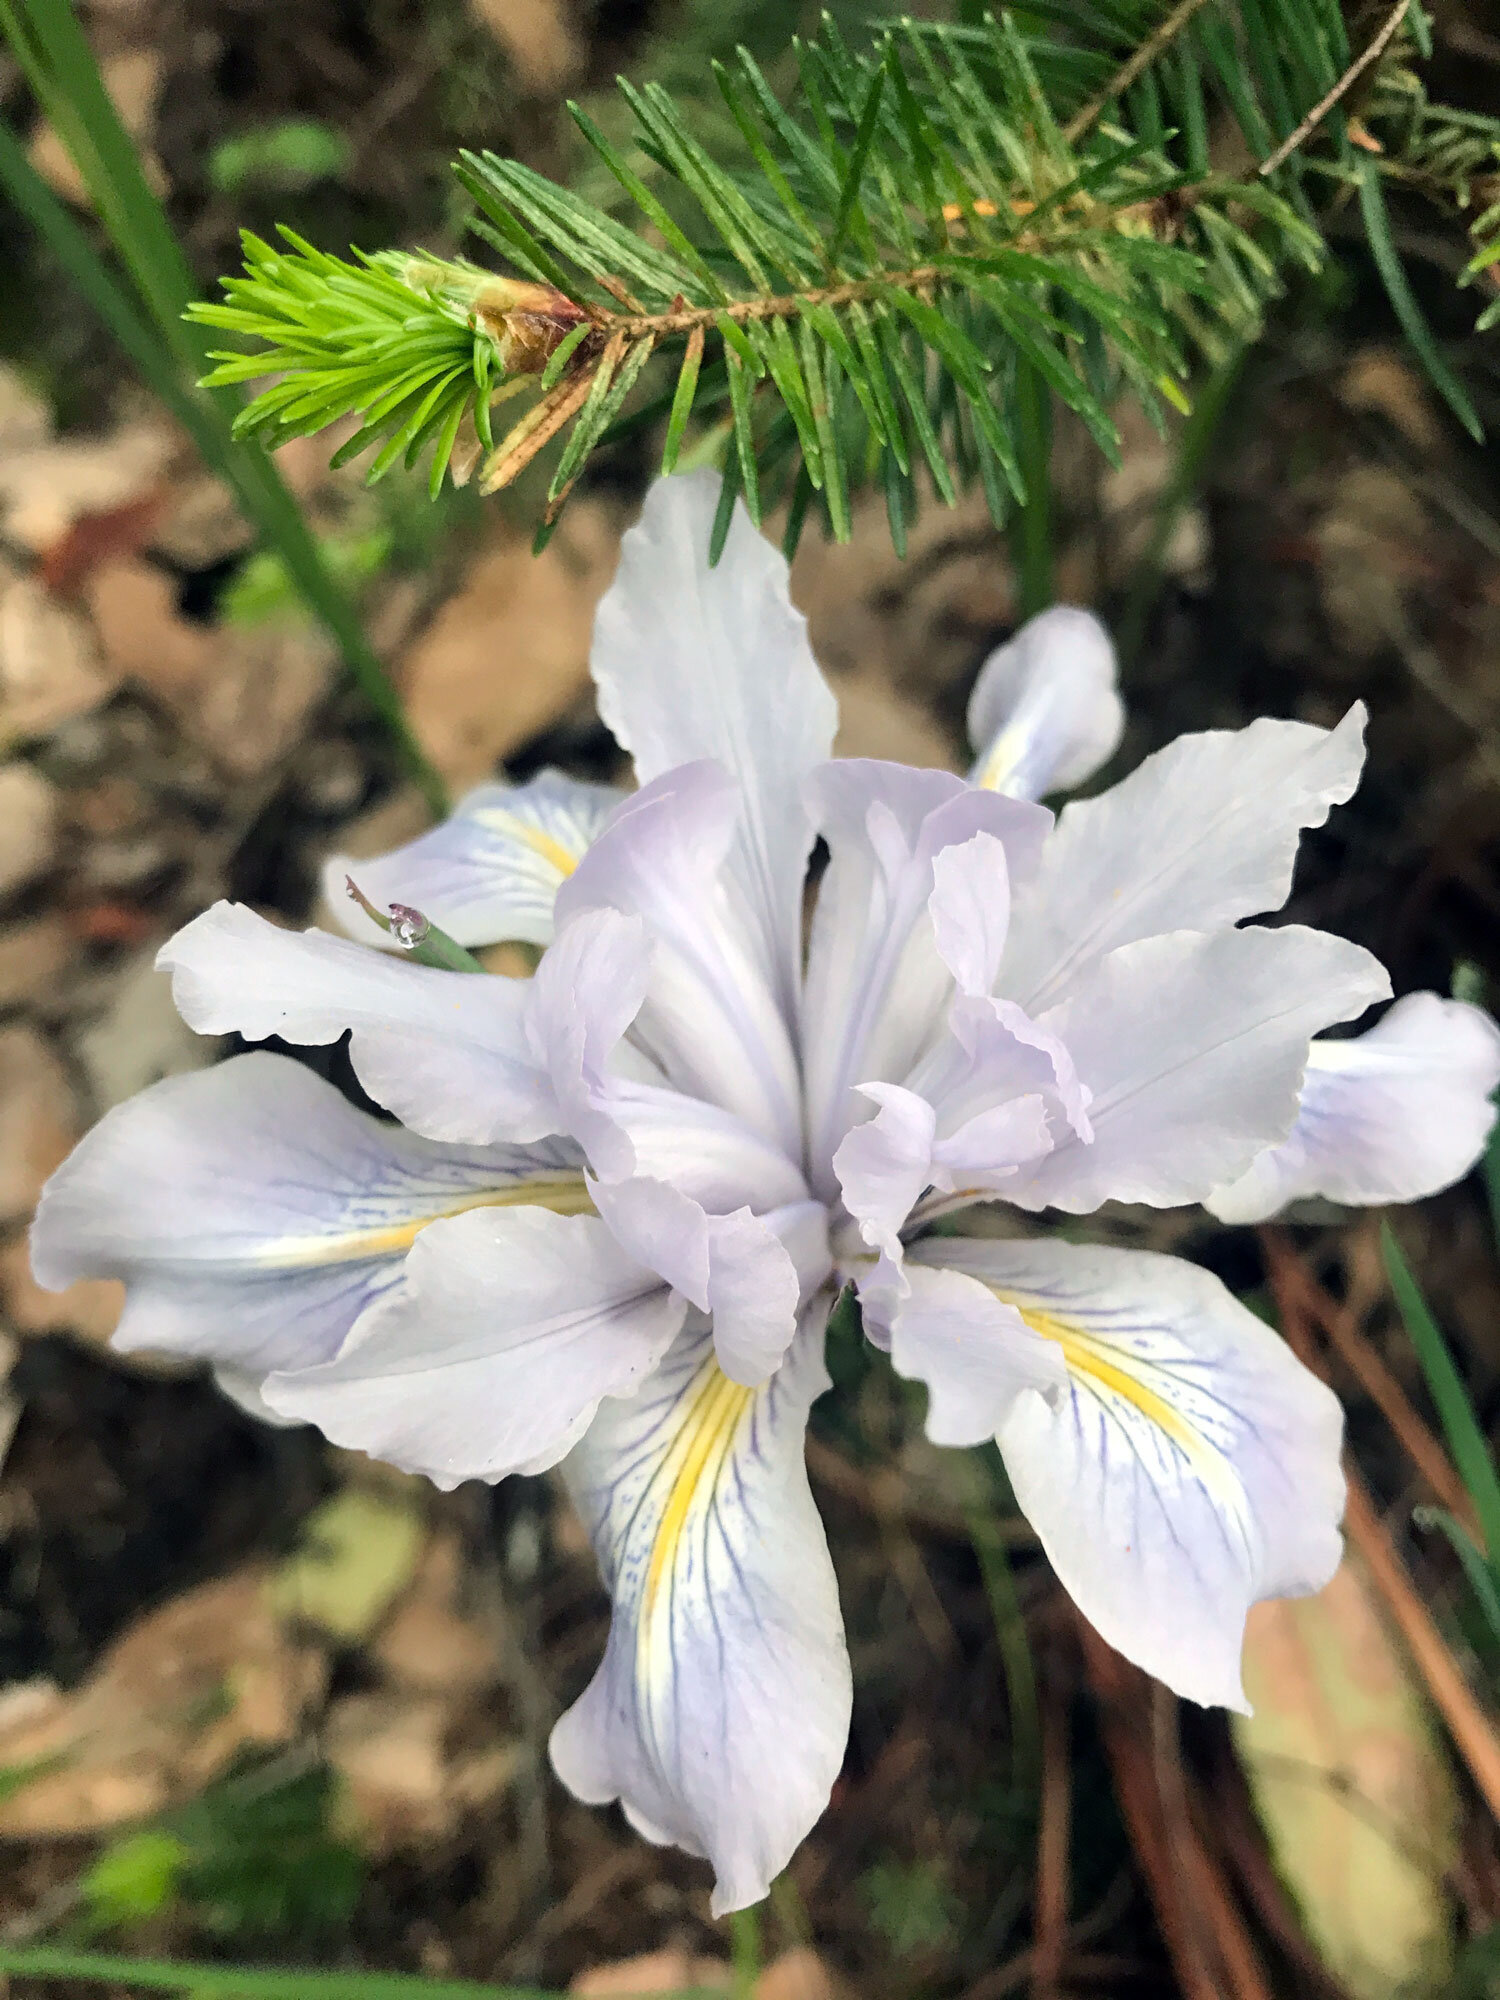 Fernald's Iris (Iris fernaldii)